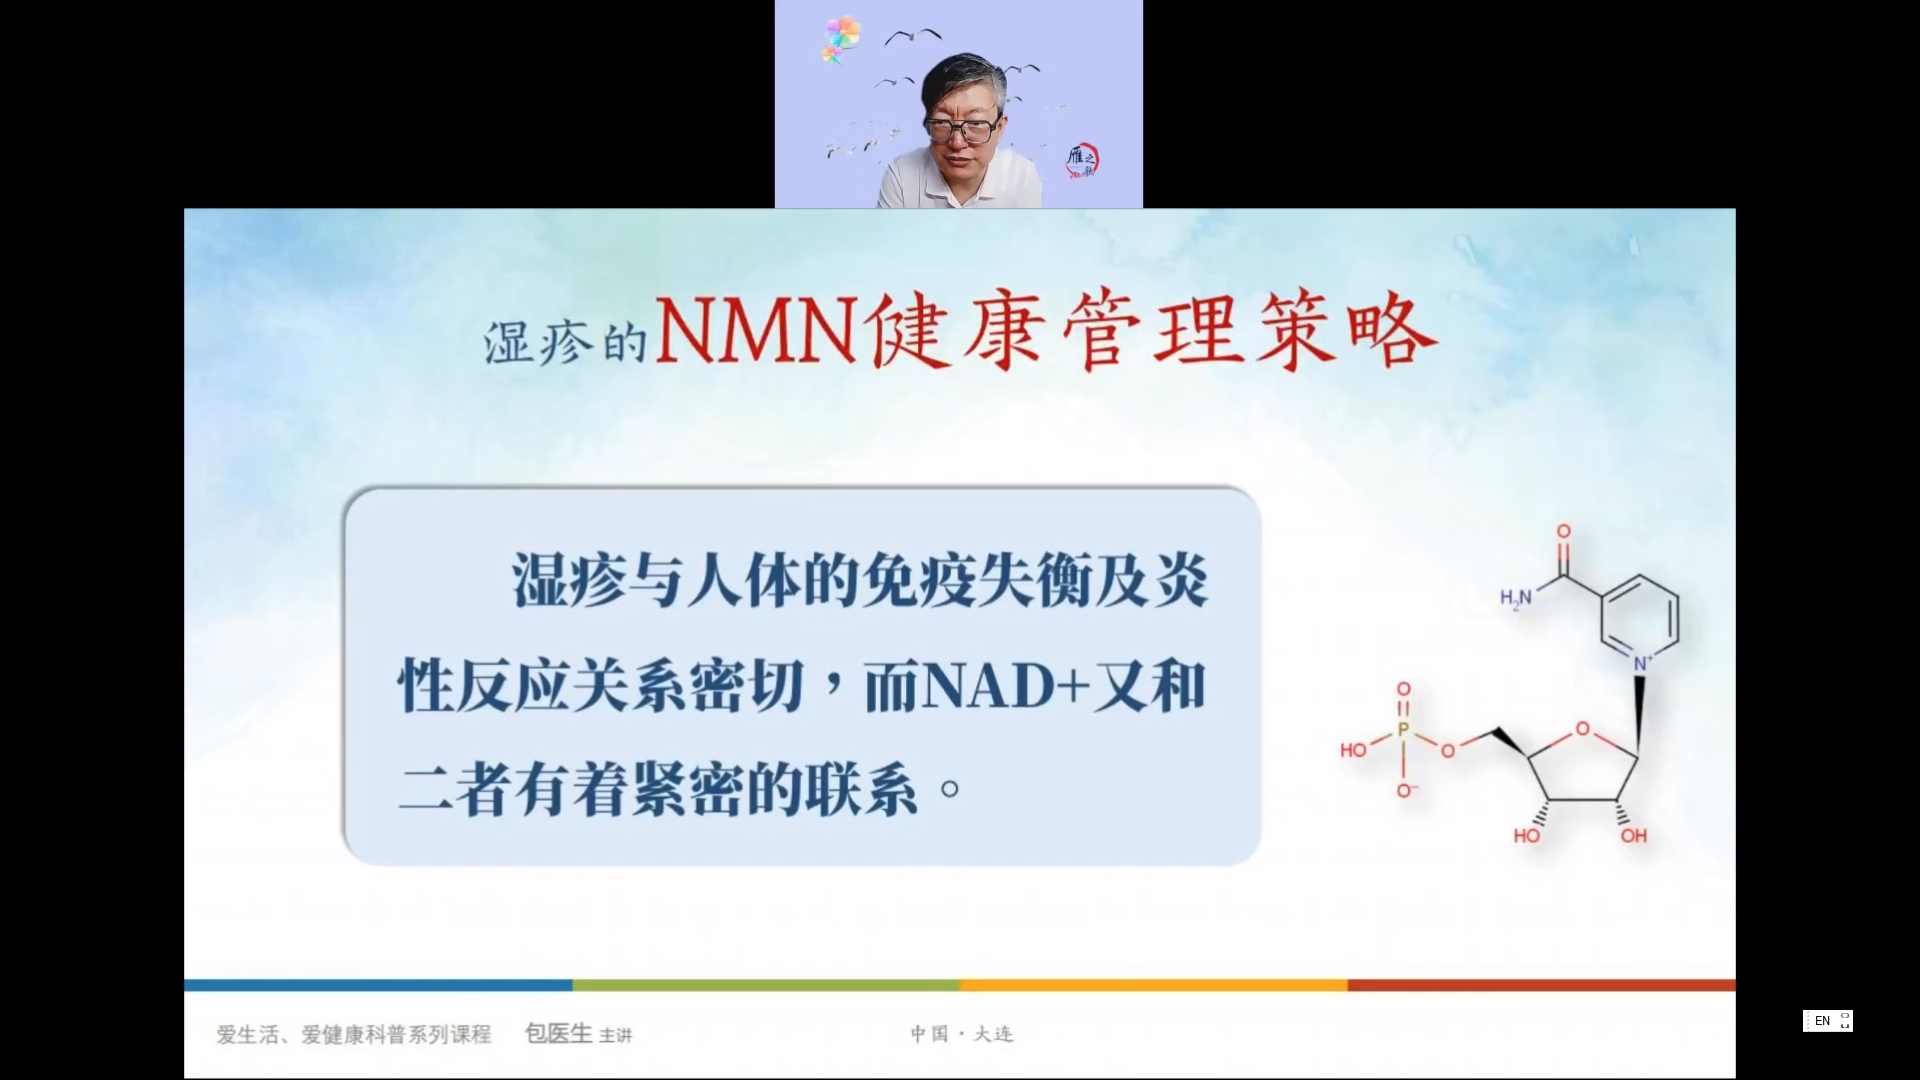 【健康讲座】湿疹类疾病的NMN健康管理策略